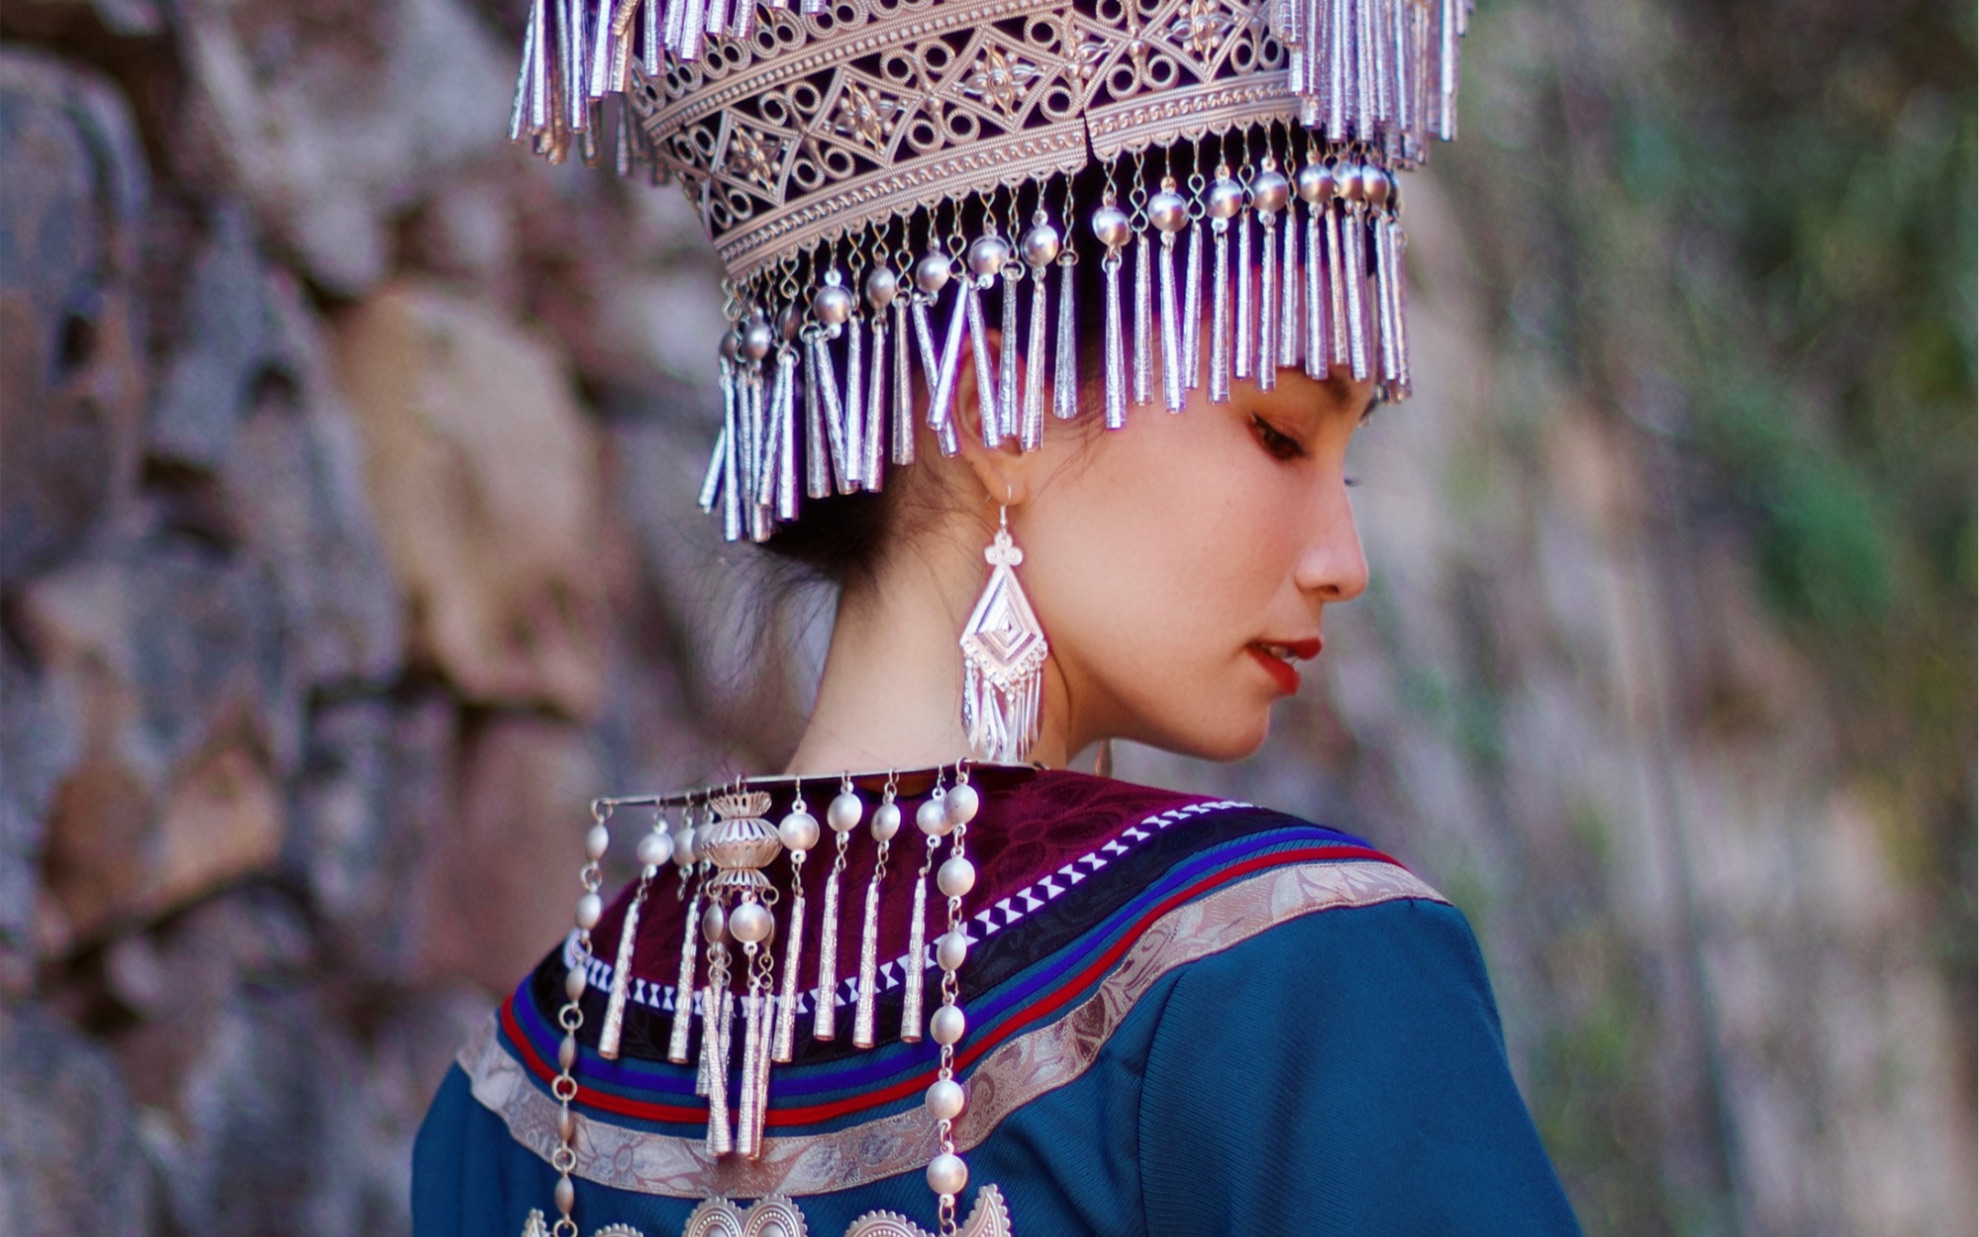 滇东南型彝族服饰图片